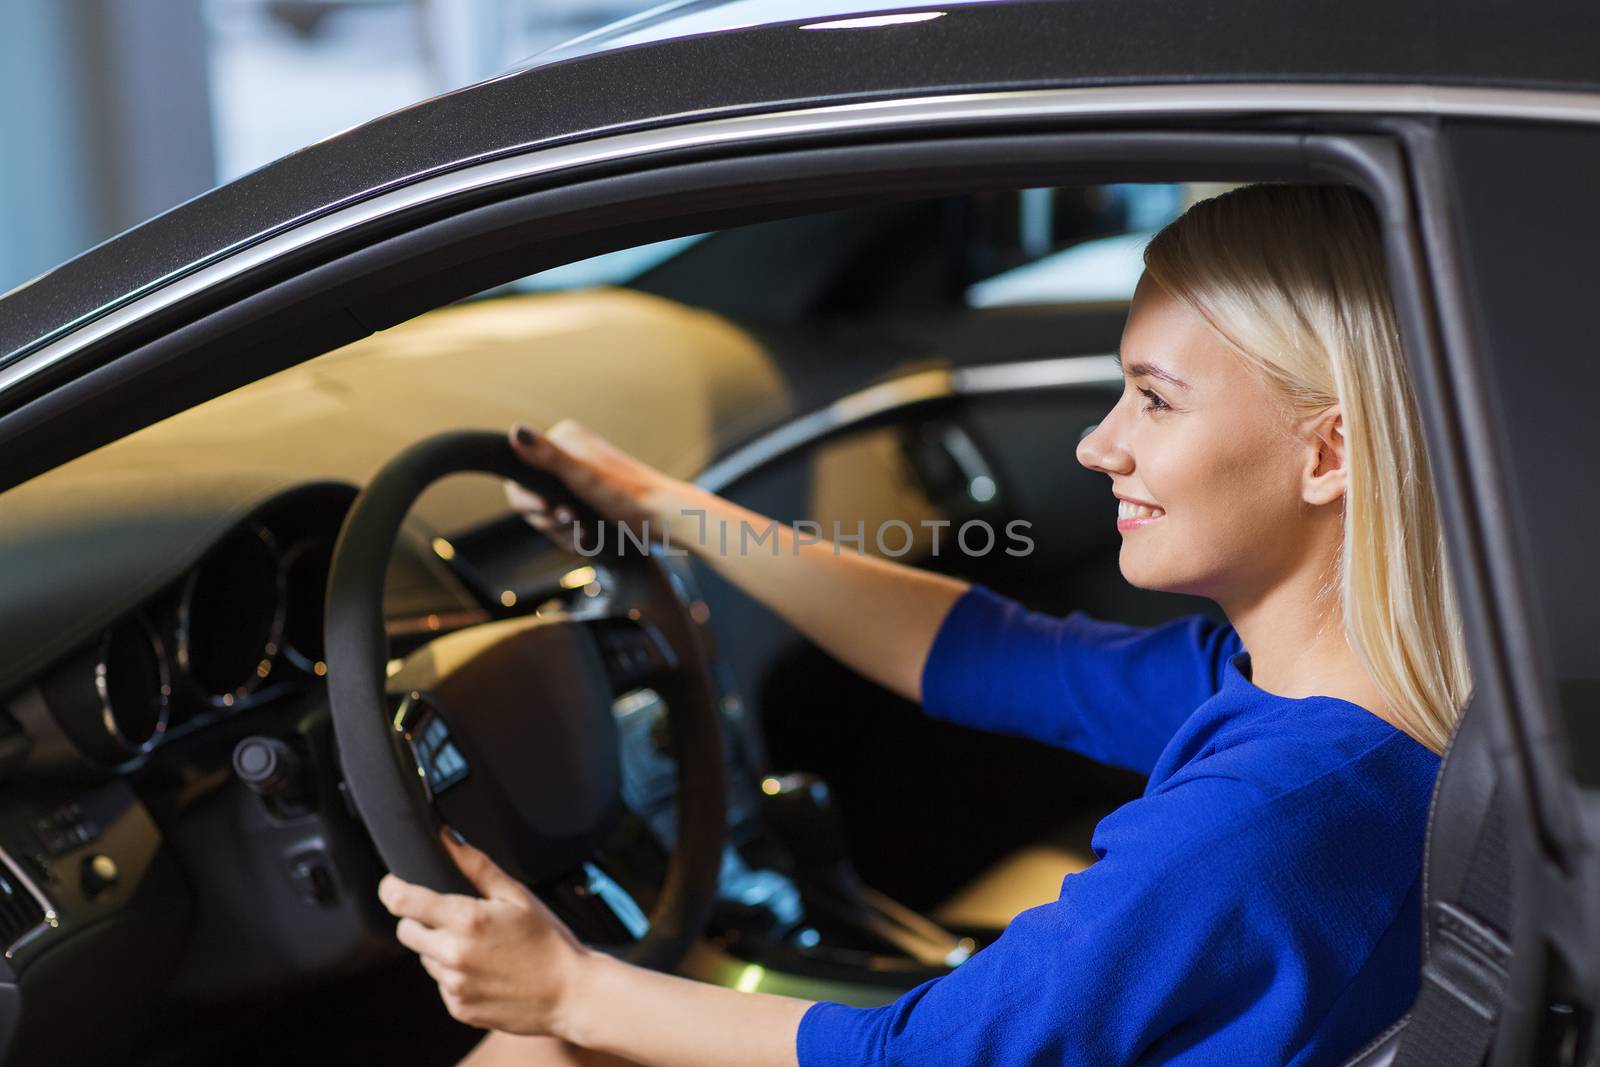 happy woman inside car in auto show or salon by dolgachov